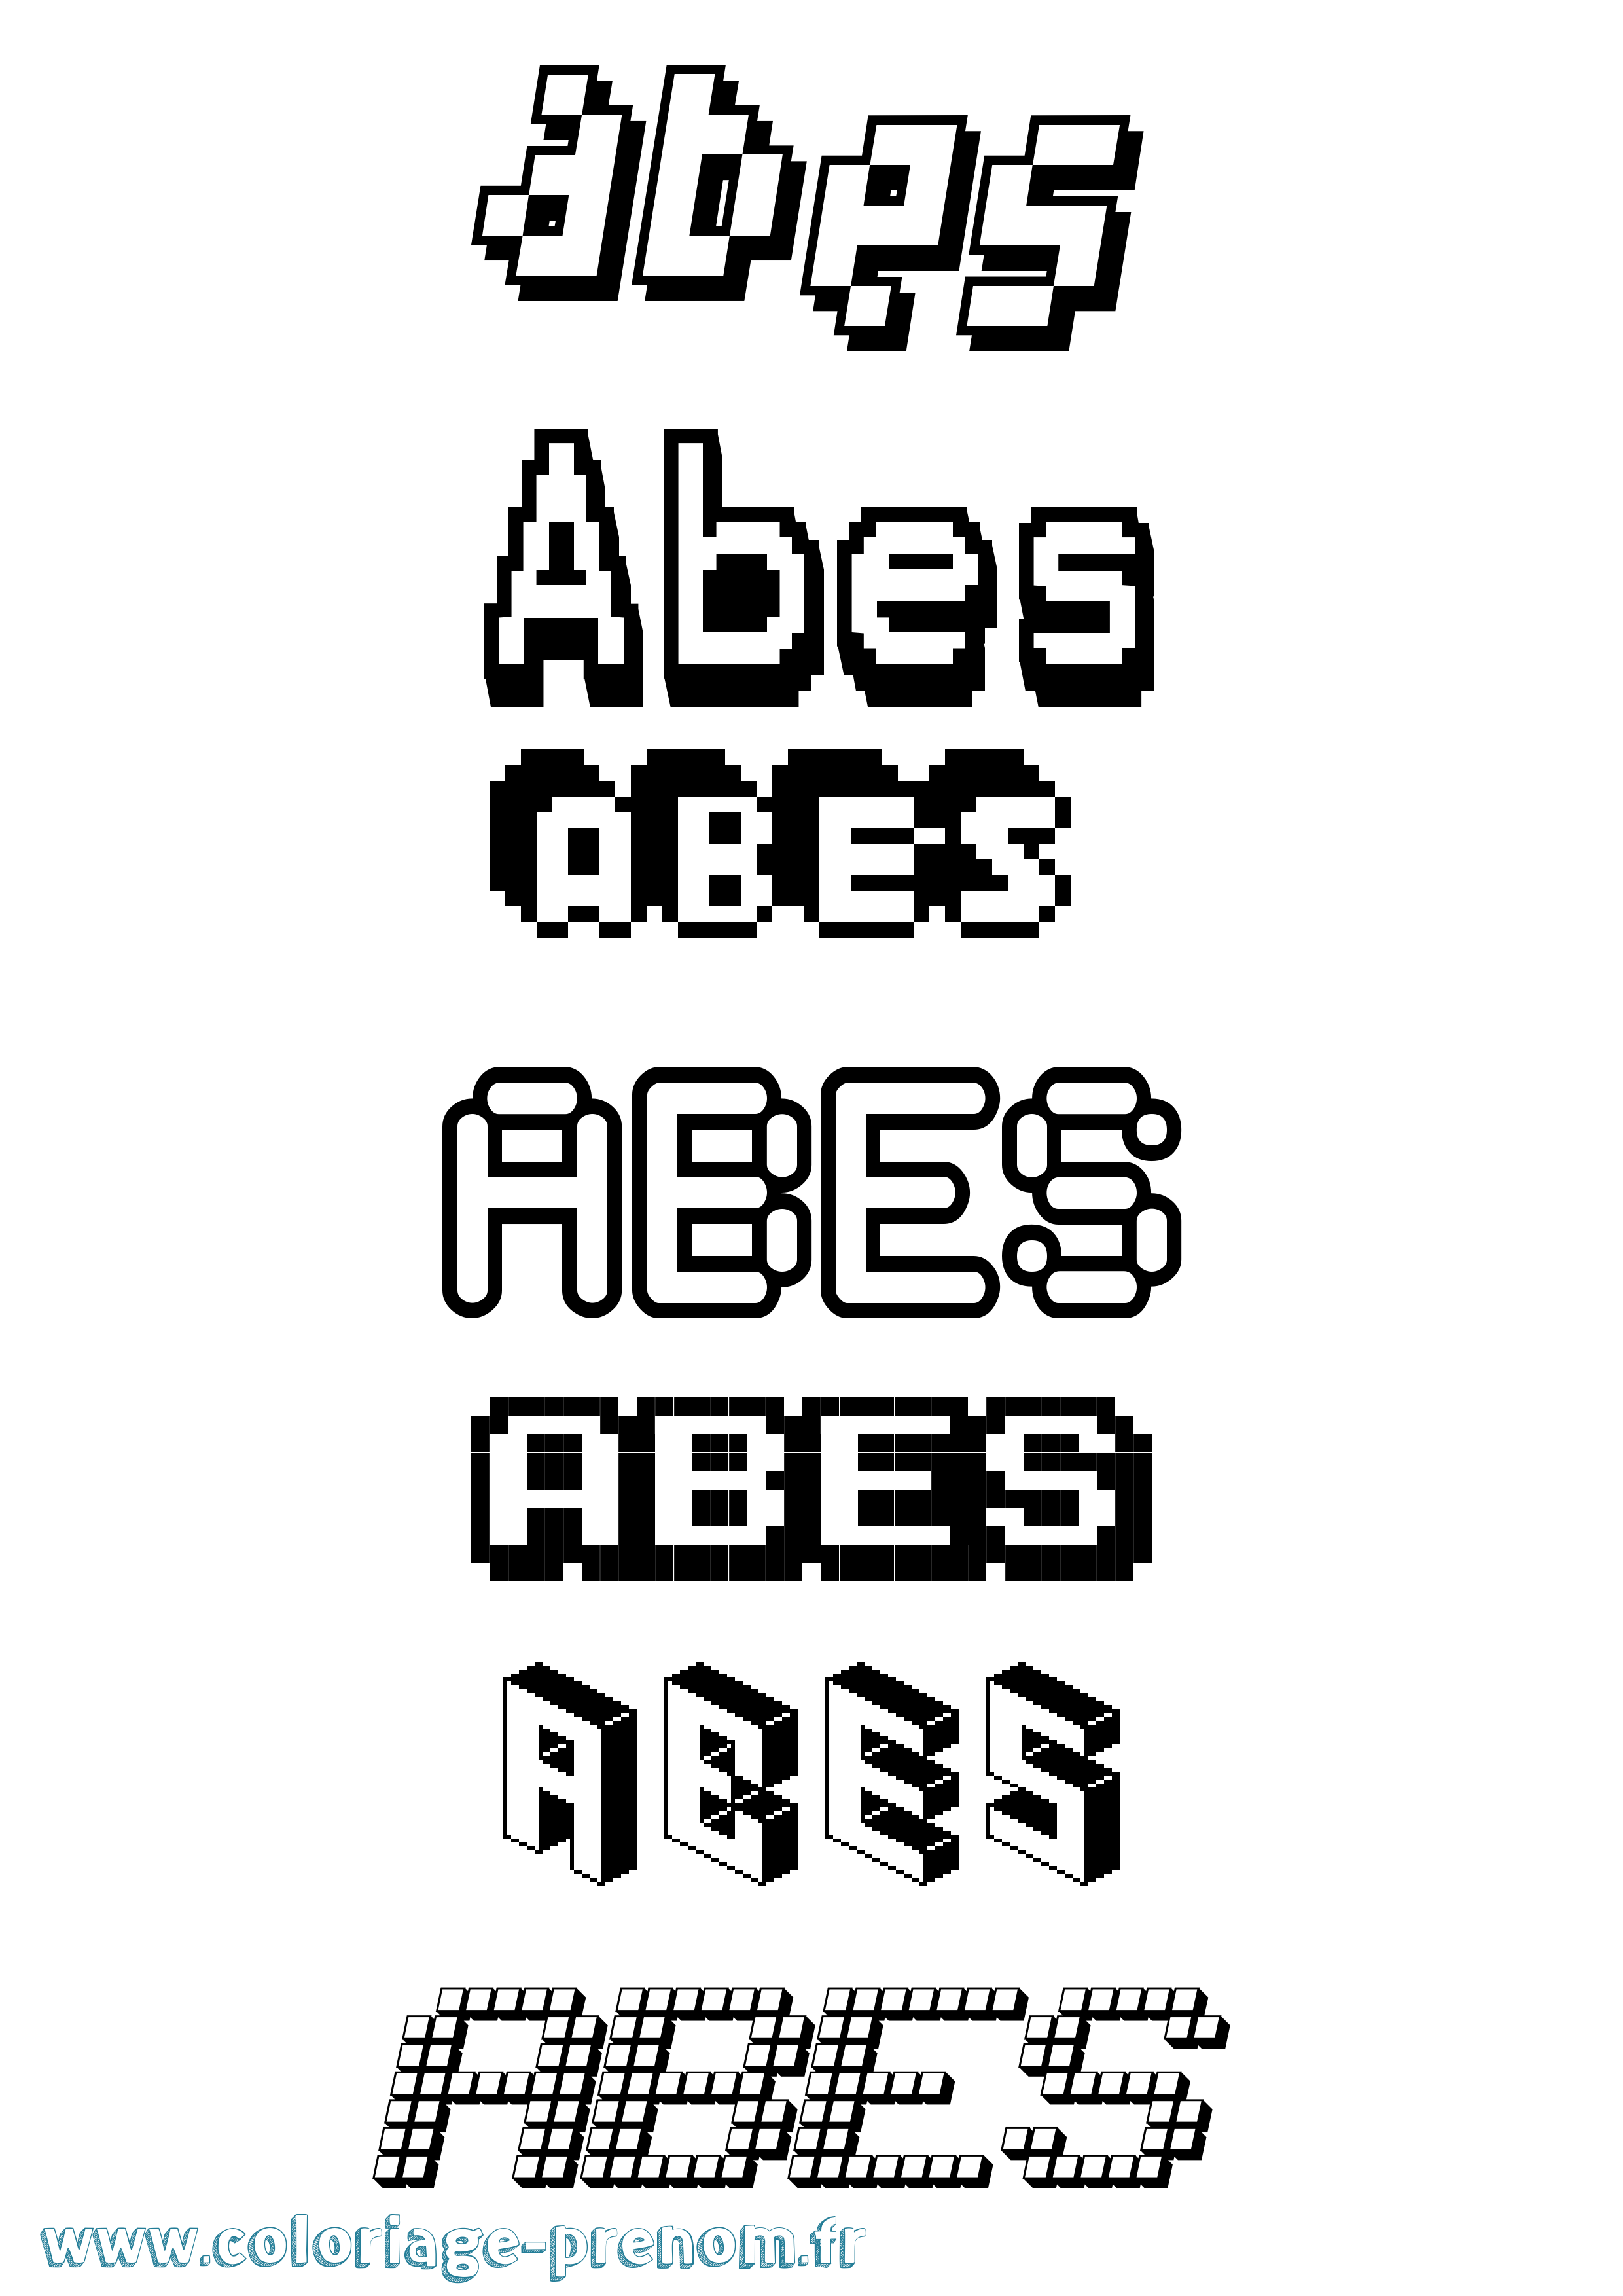 Coloriage prénom Abes Pixel